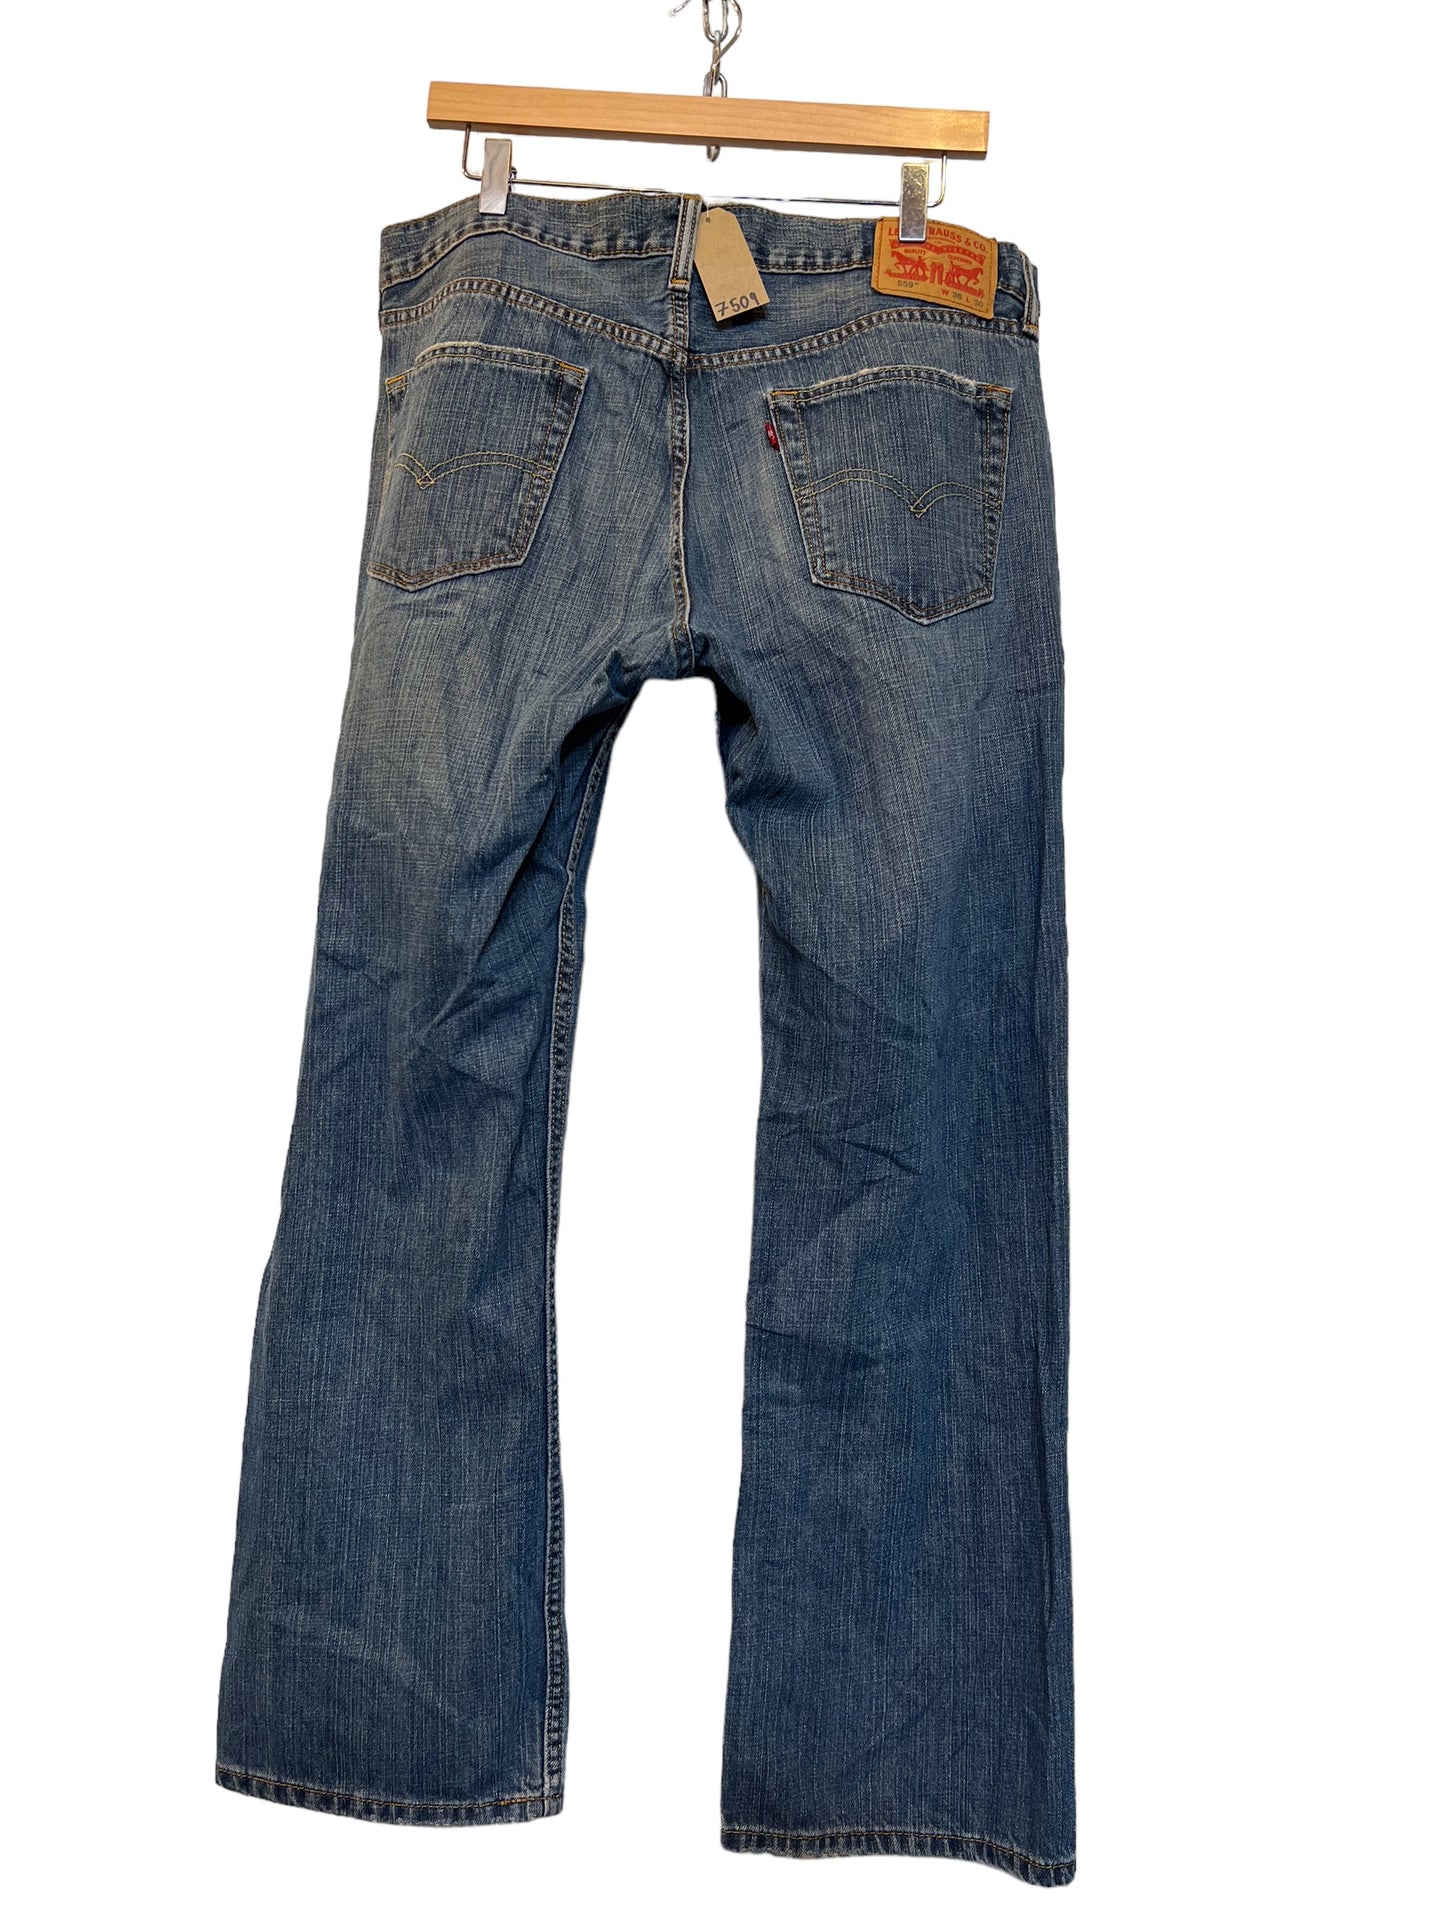 Levi 559 jeans (36x30)